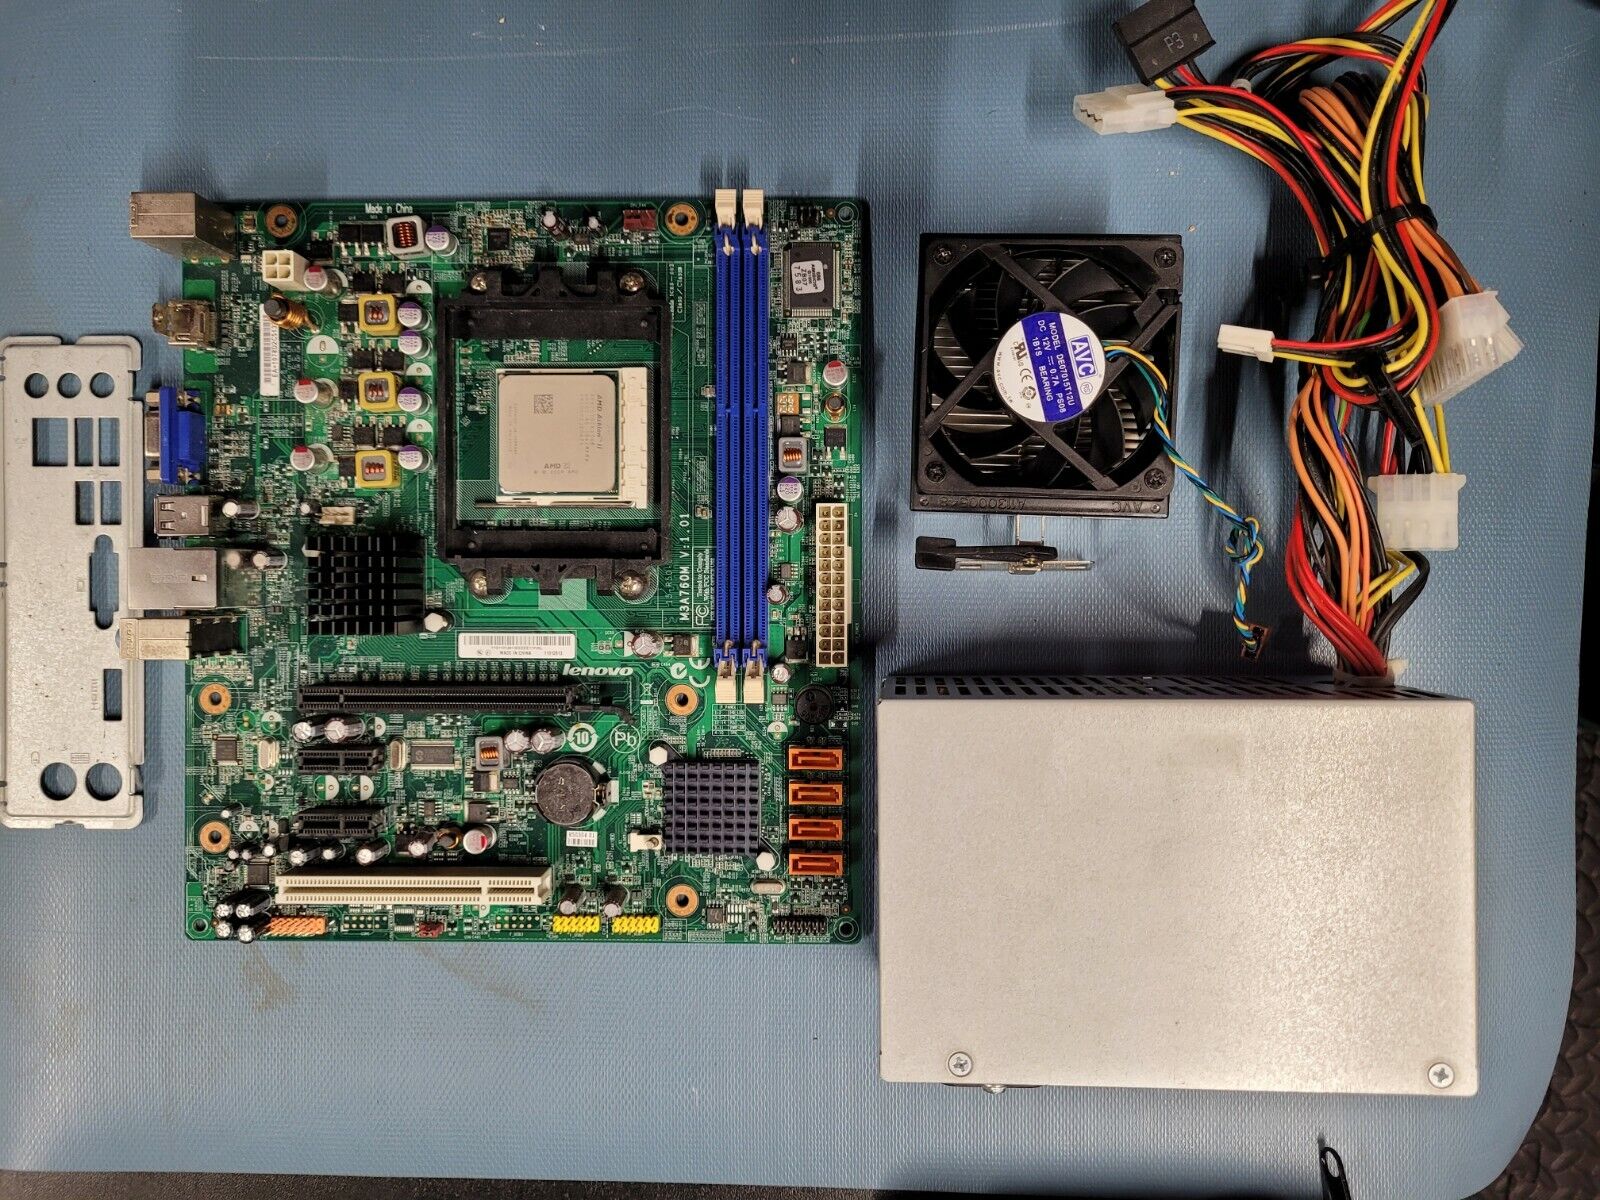 Combo M3A760M V1.01 AMD AM3 DDR3 Motherboard RS780Q-LM5, I/O shield, CPU & PSU